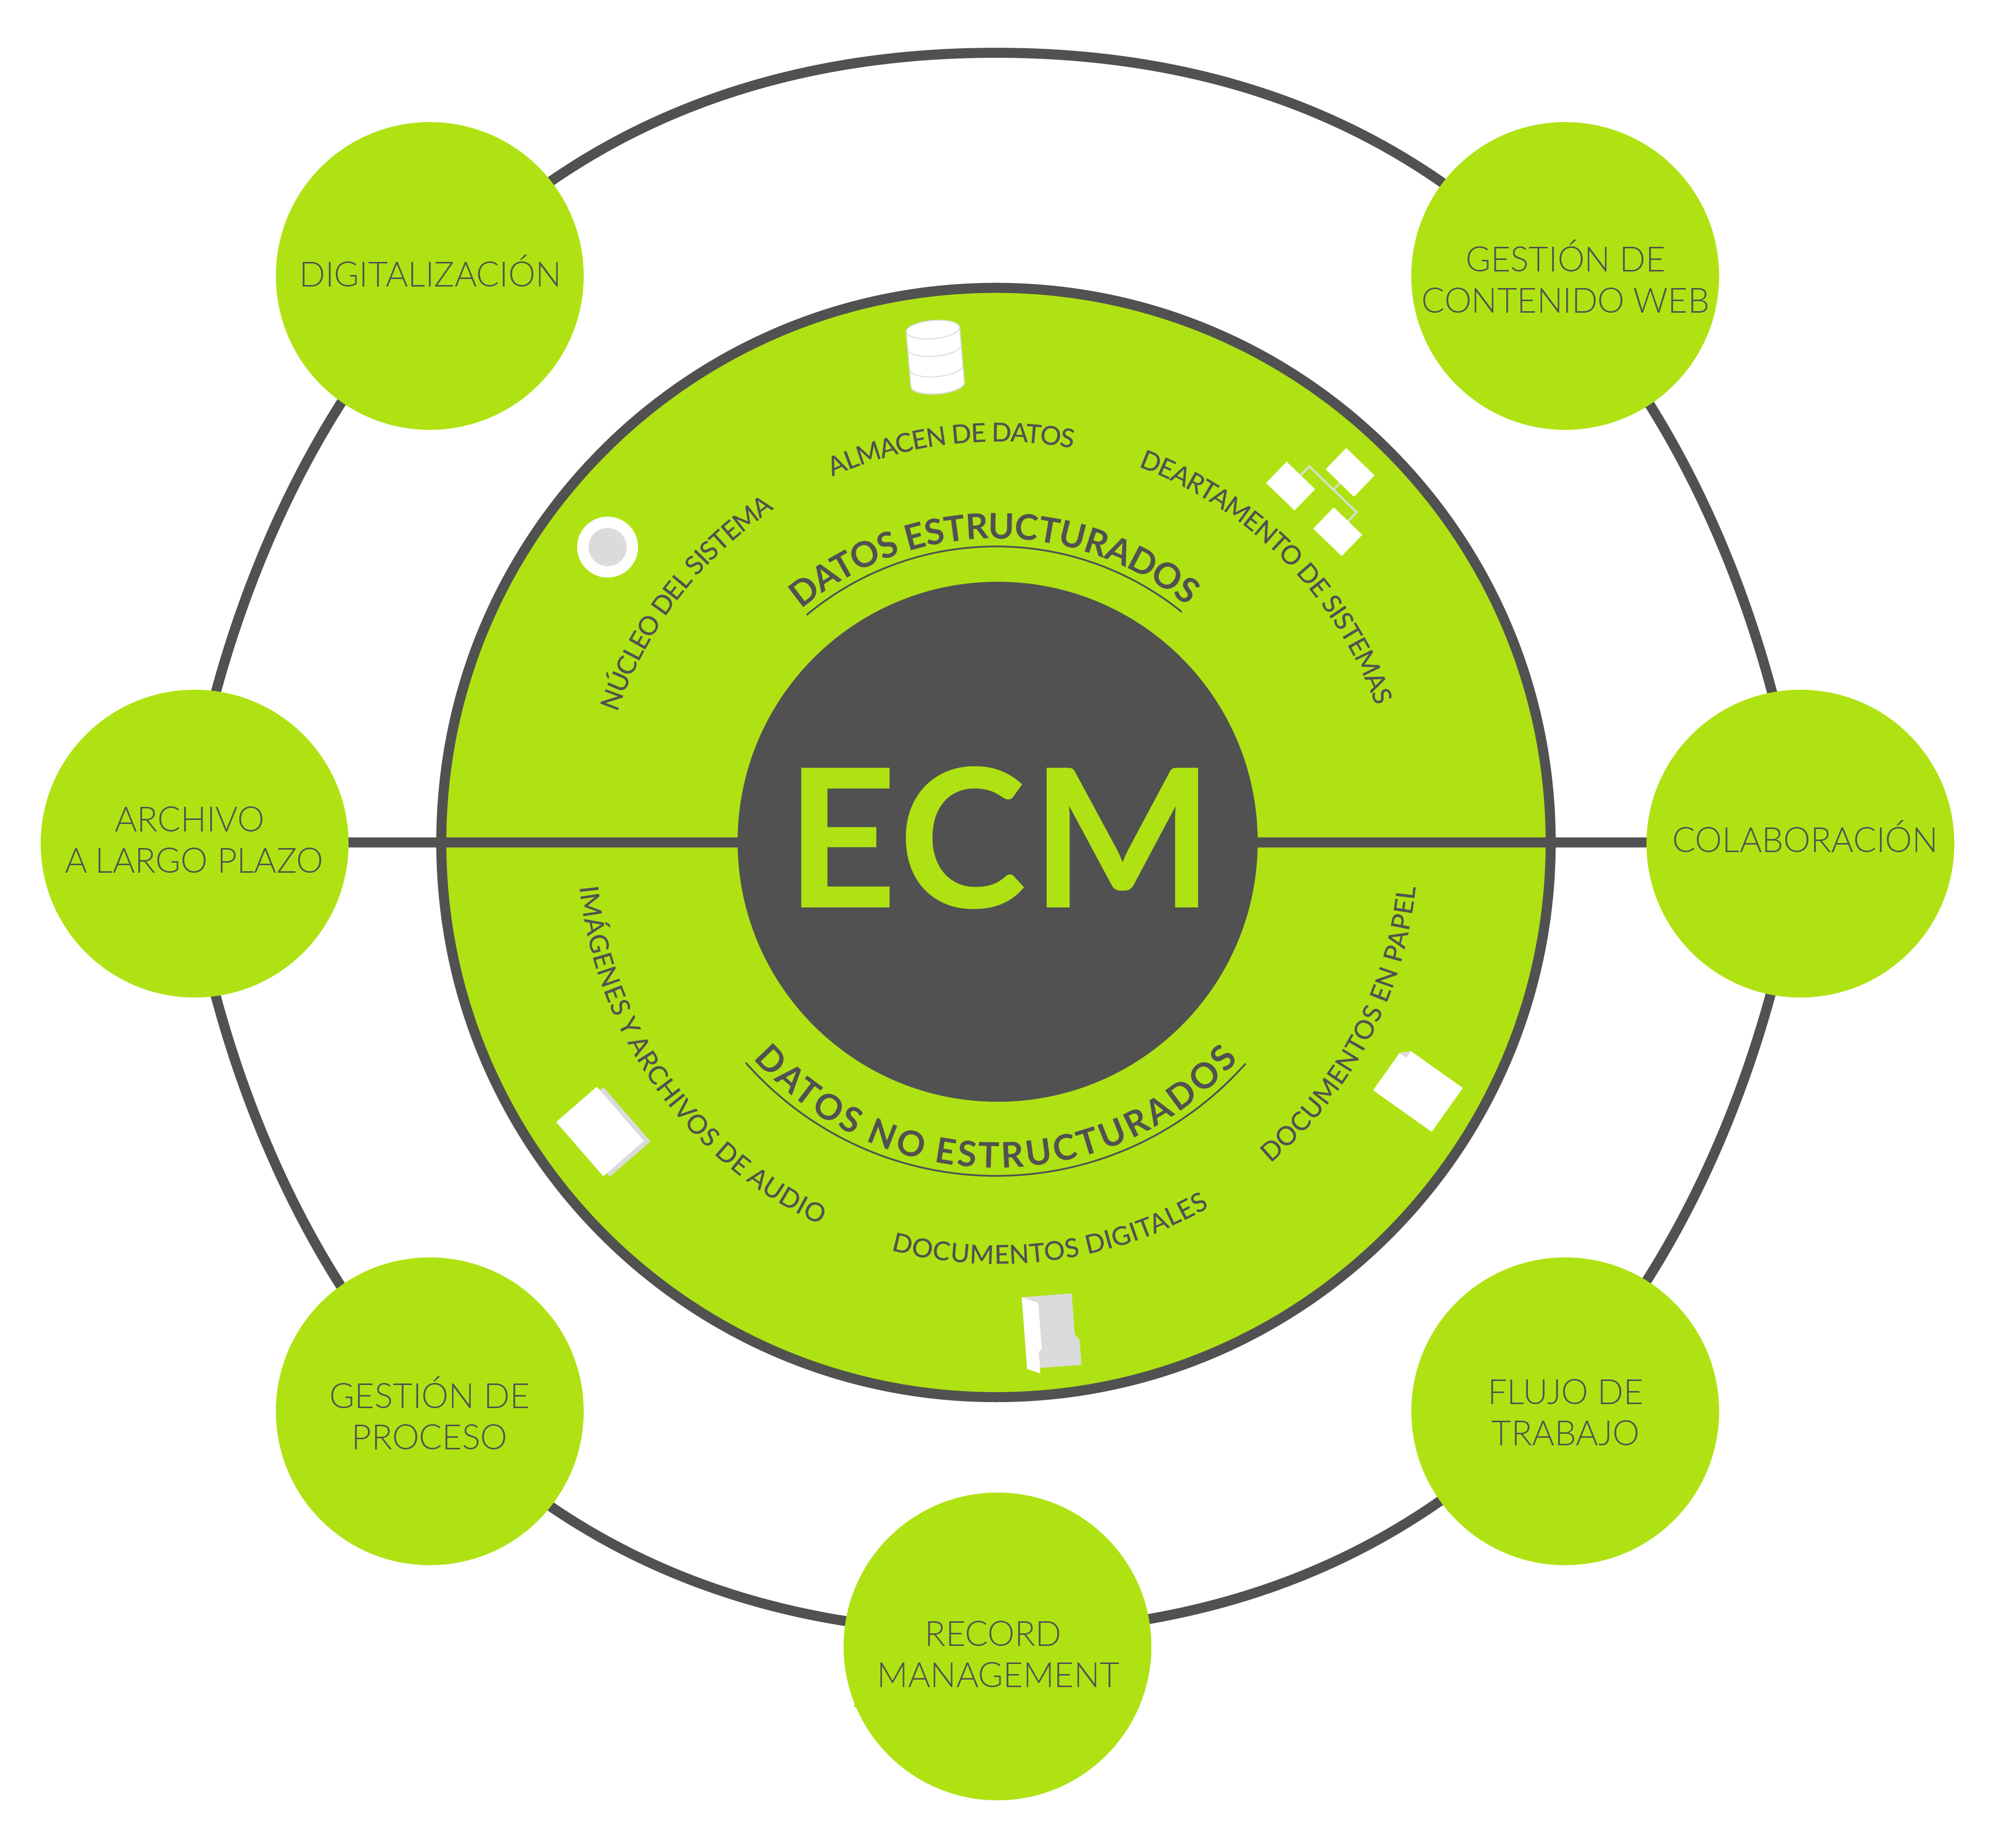 Beneficicos de un sistema ECM